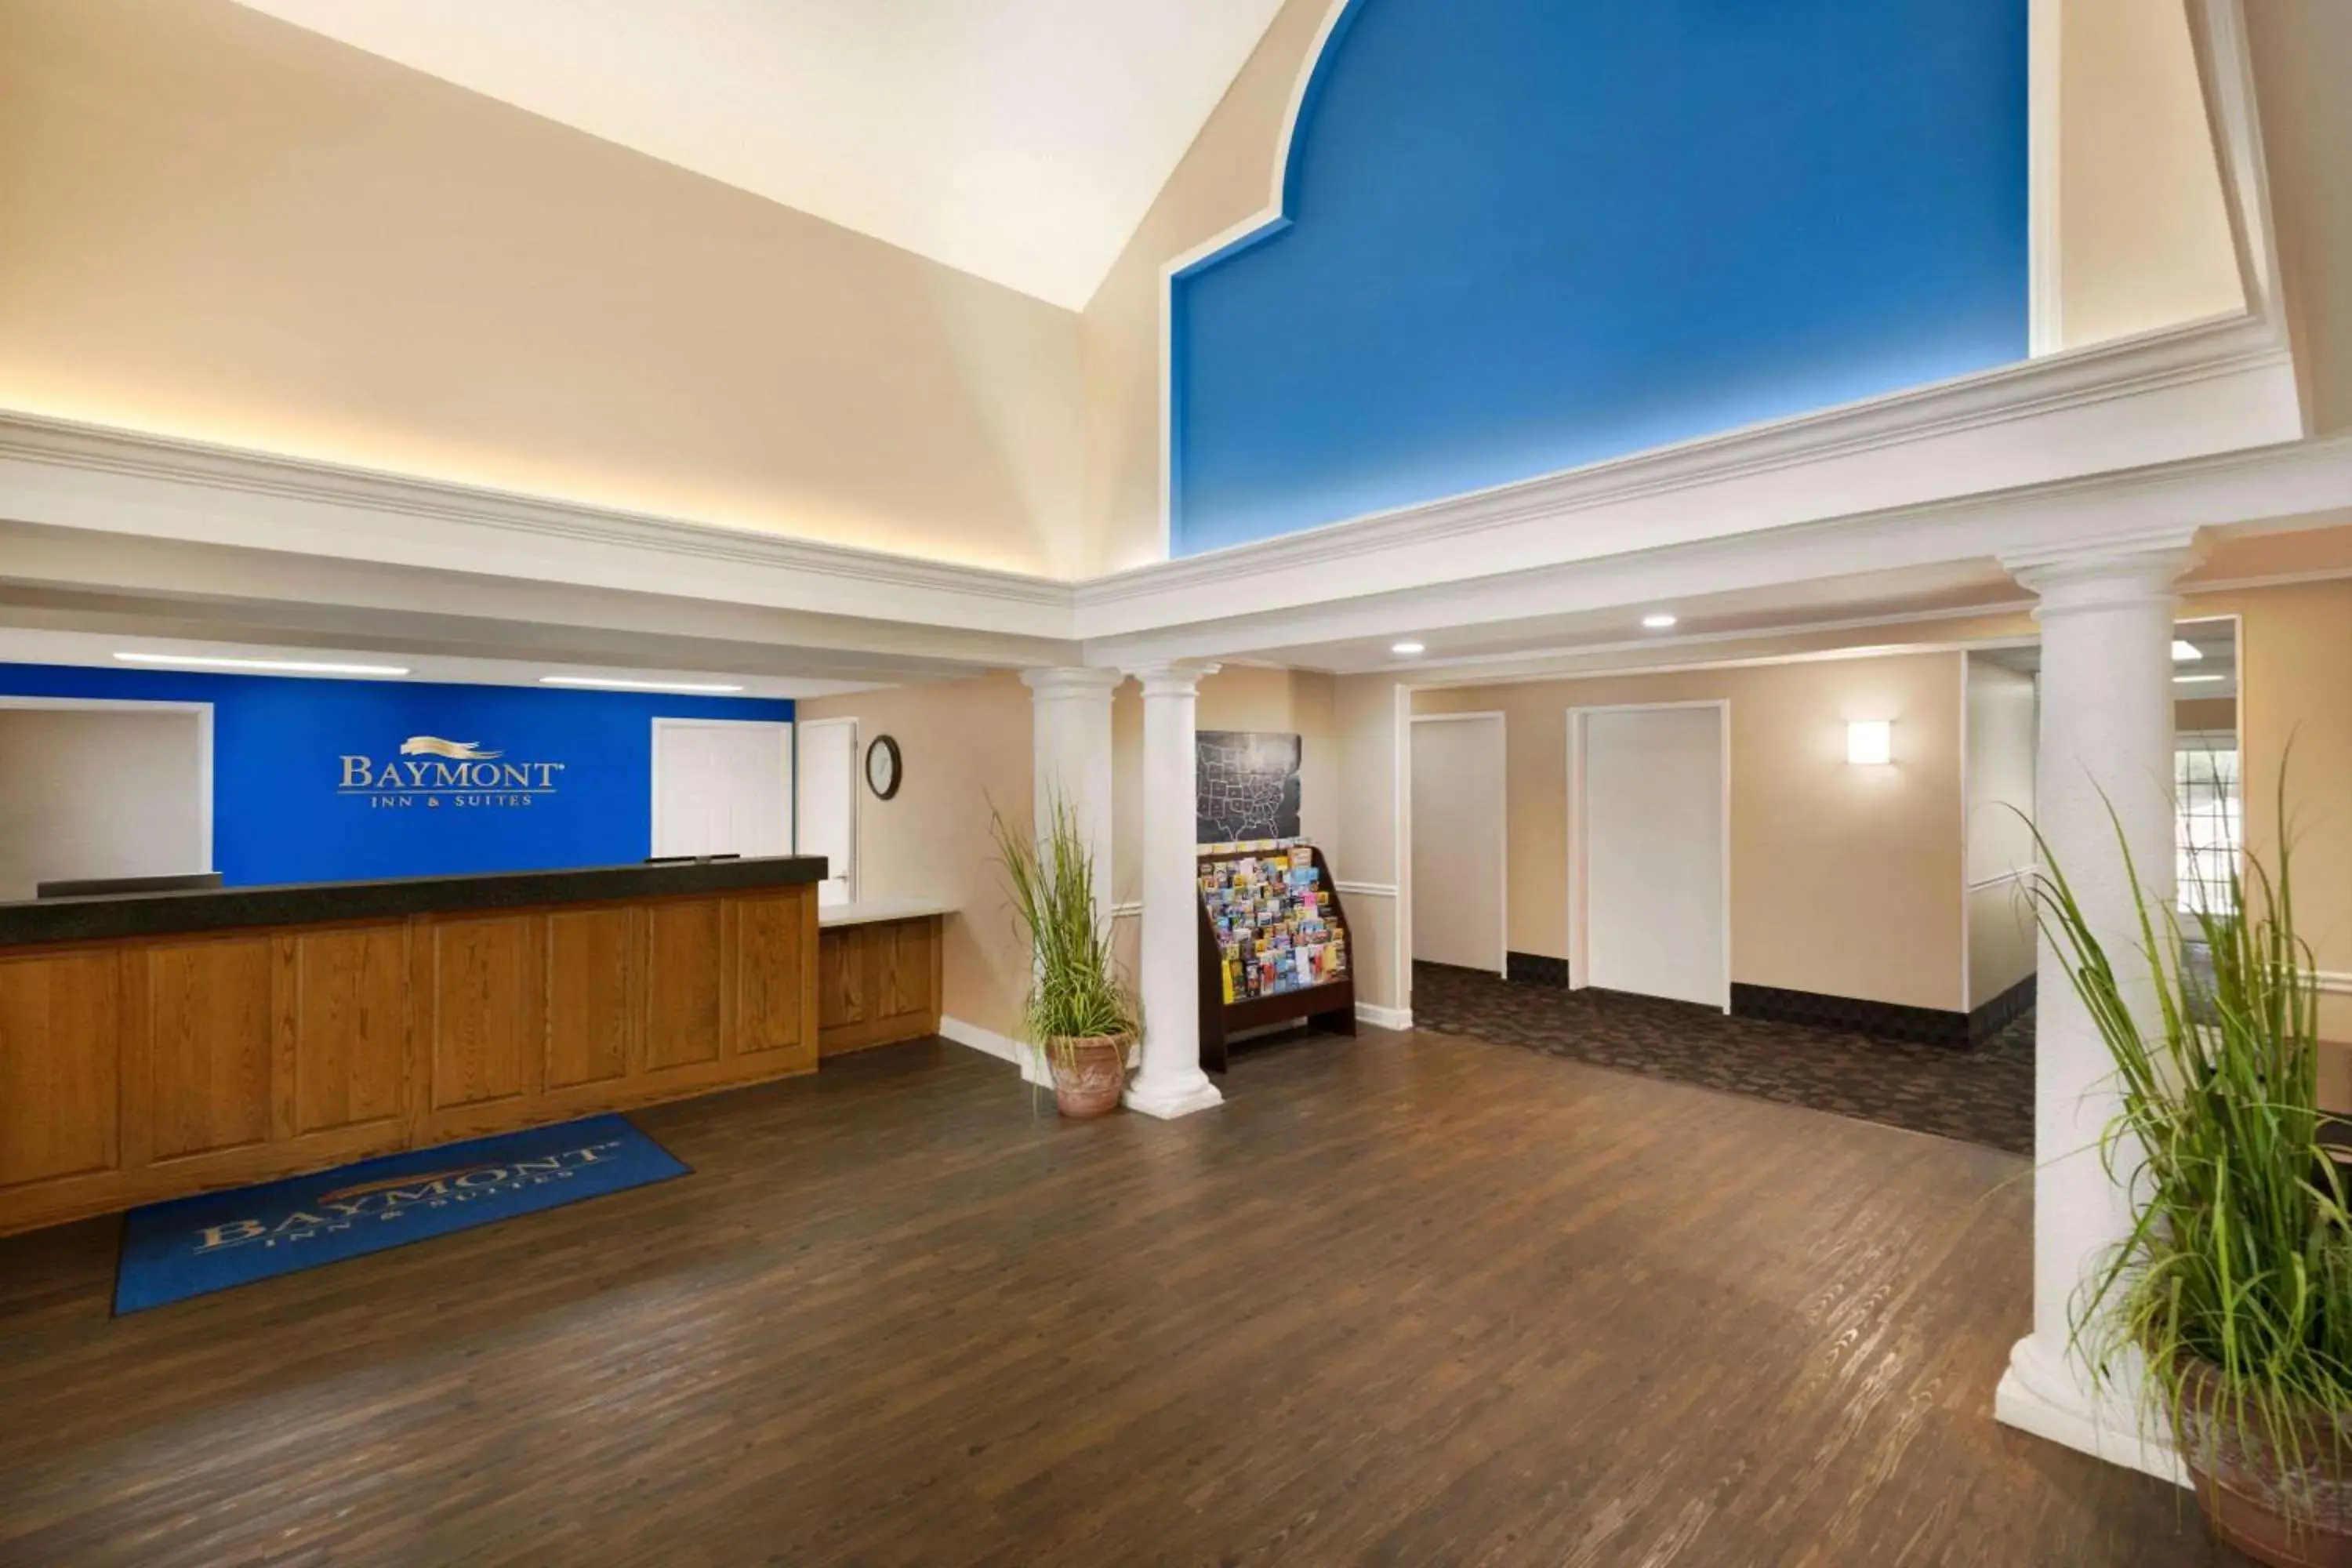 Lobby or reception, Lobby/Reception in Baymont by Wyndham Ormond Beach